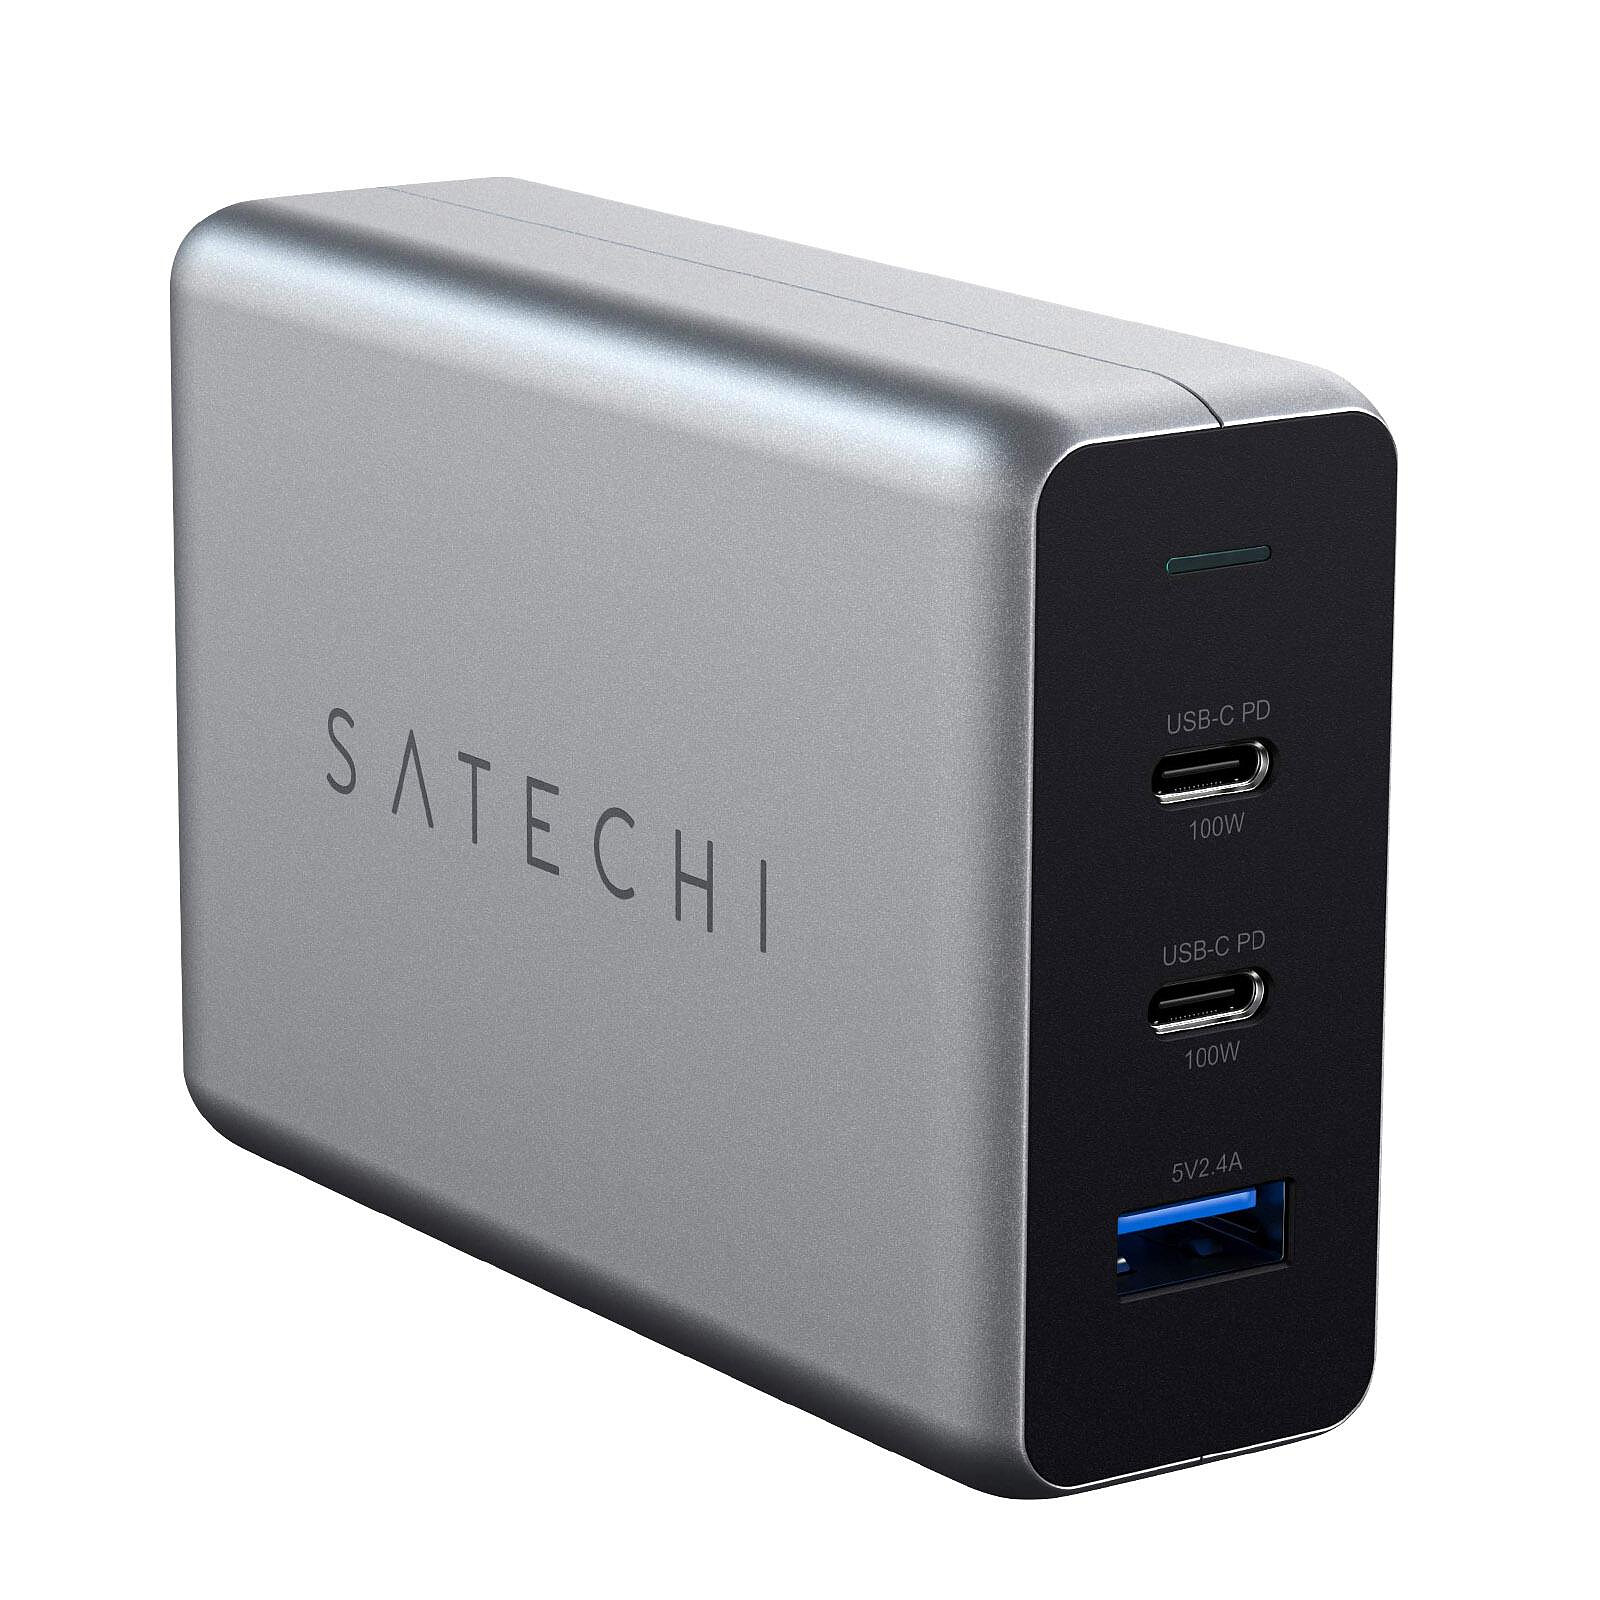 Satechi Chargeur Secteur GaN USB-C Power Delivery 30W Format Compact Gris  Sidéral - Chargeur téléphone - LDLC